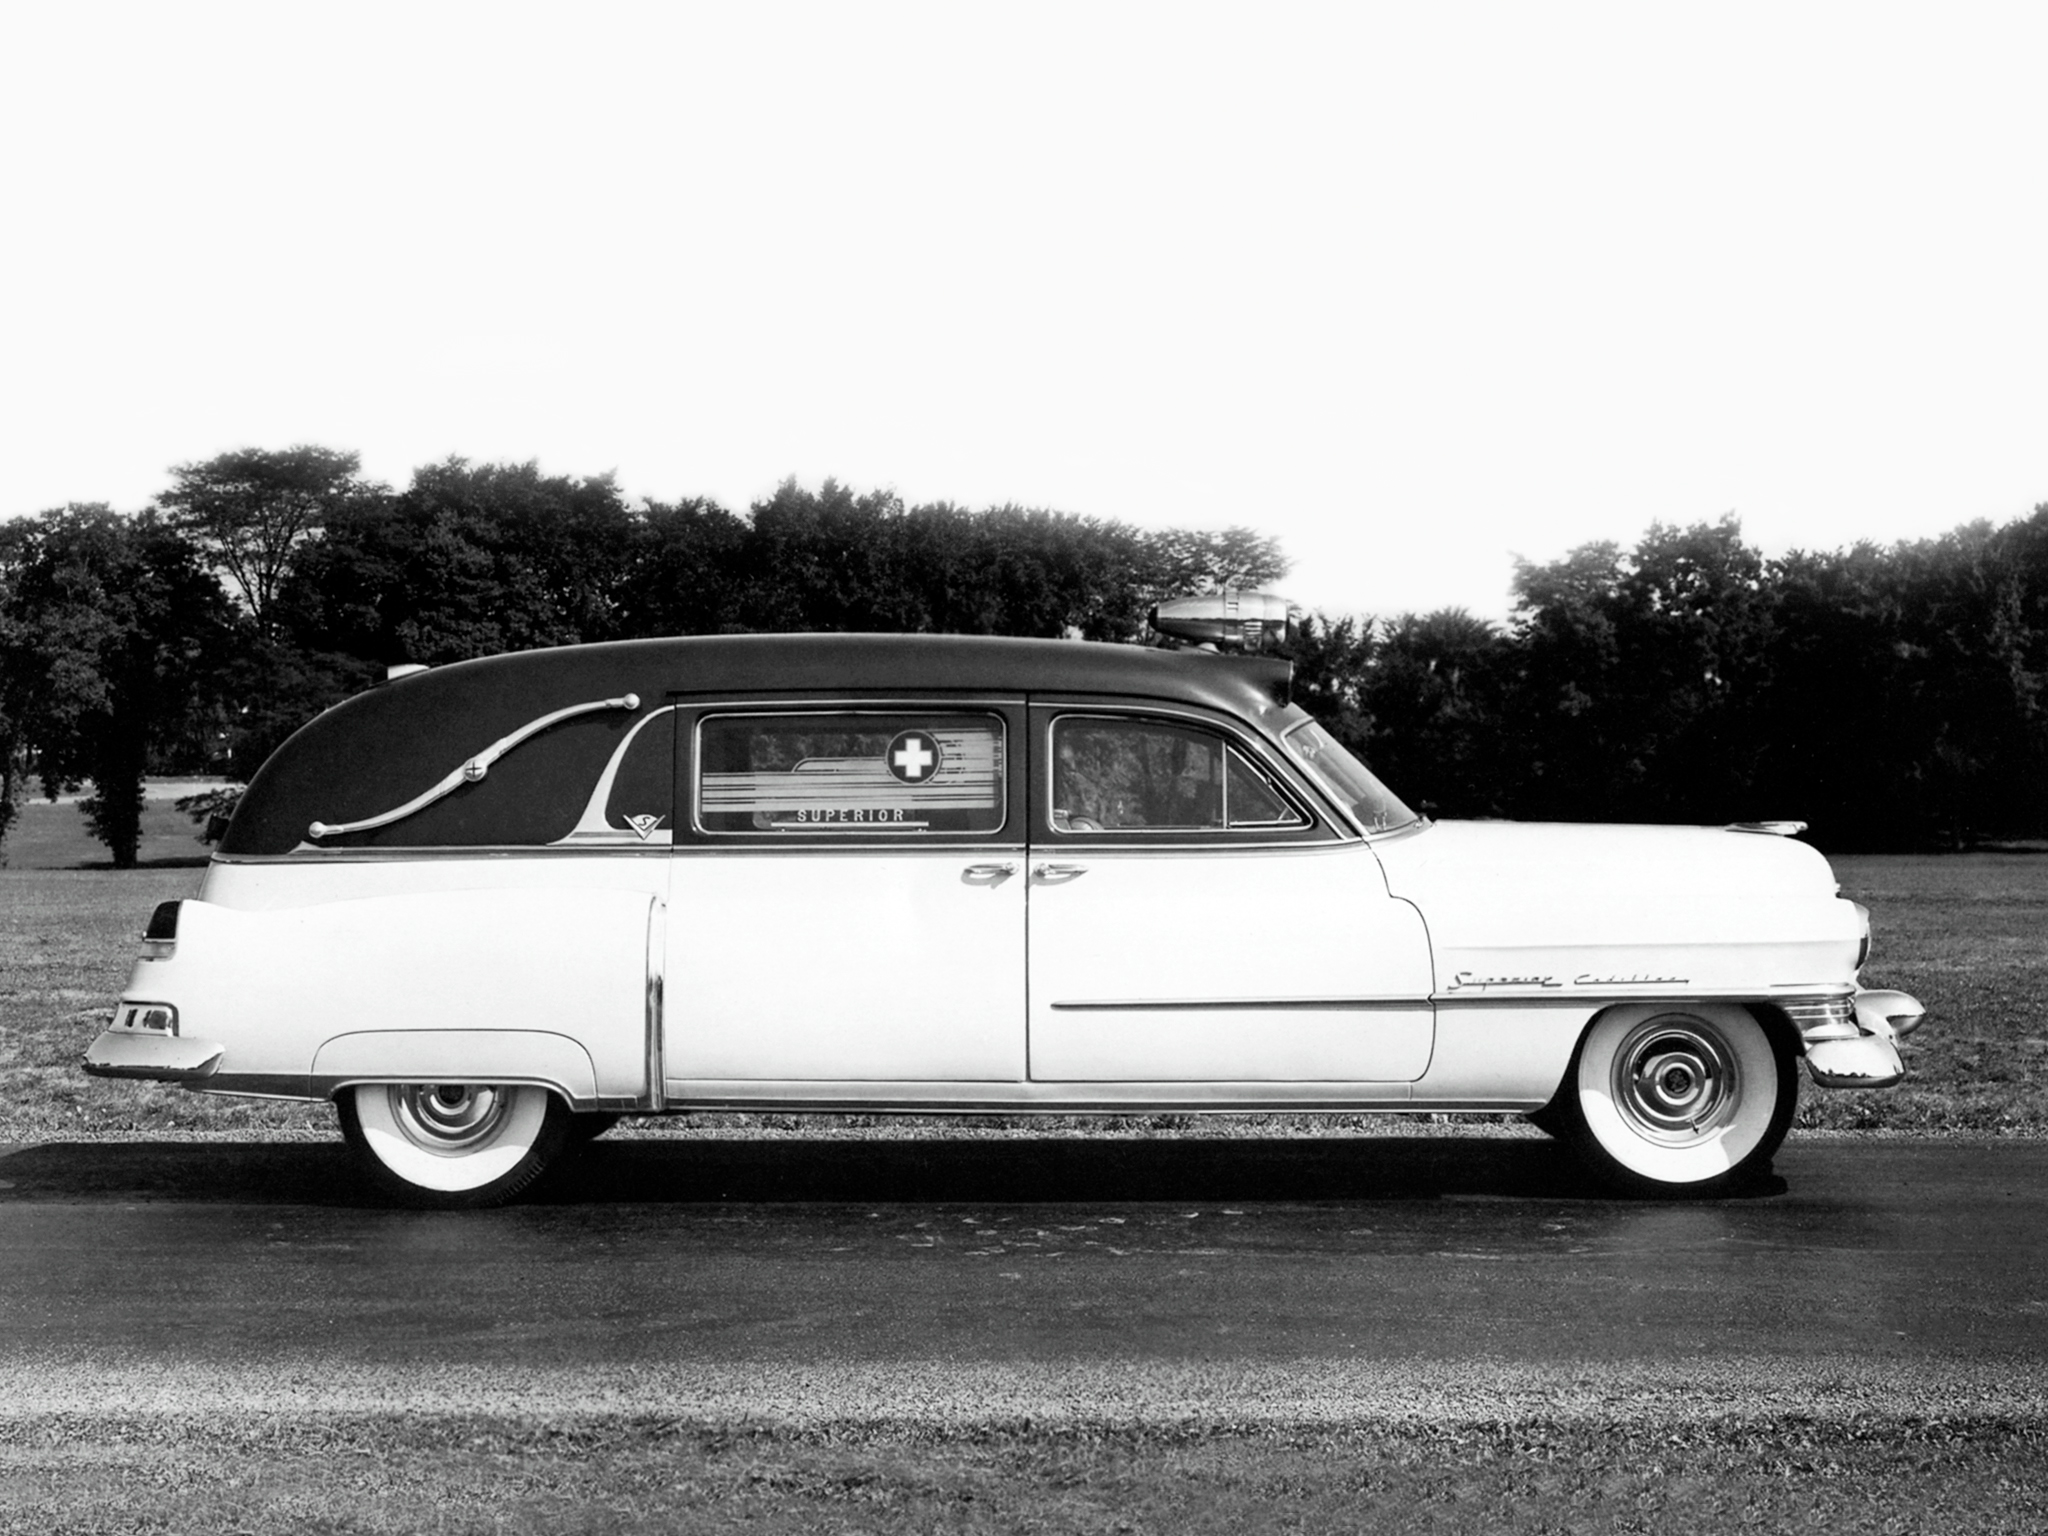 1952, Superior, Cadillac, Landaulet, Ambulance,  52 75 86 , Emergency, Stationwagon, Retro Wallpaper